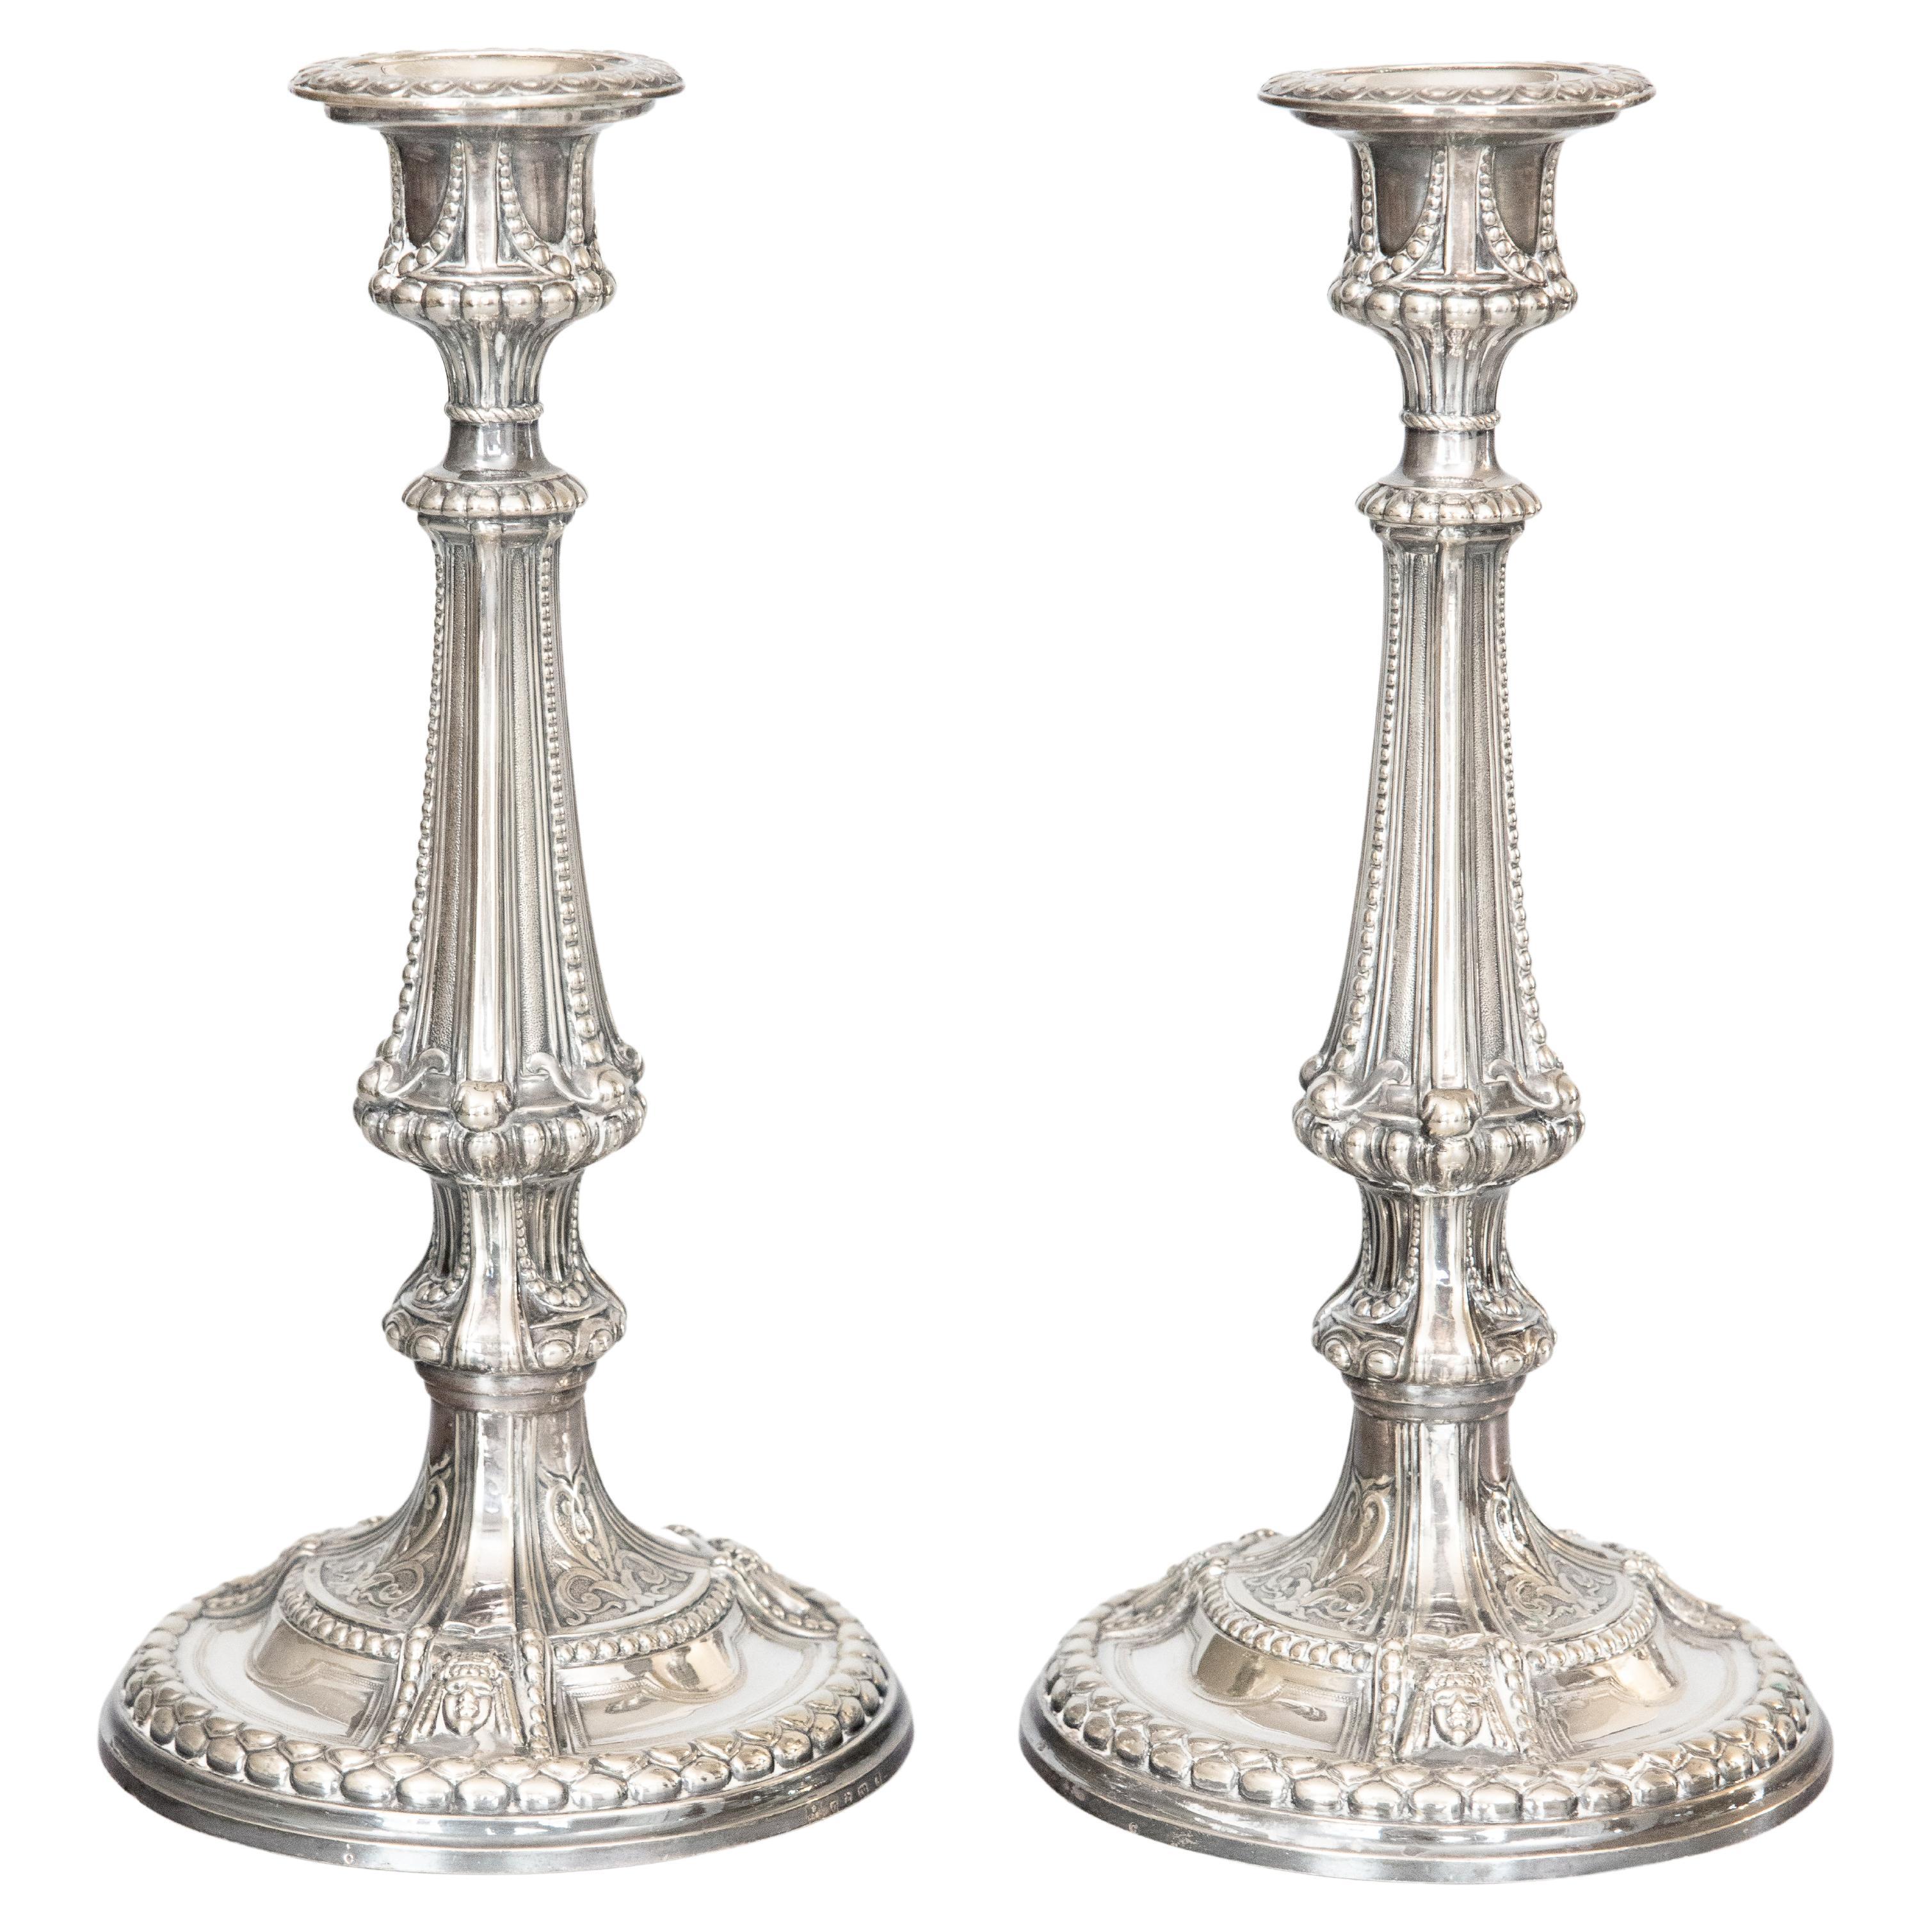 Paire de chandeliers anglais anciens de style néoclassique en métal argenté, vers 1900